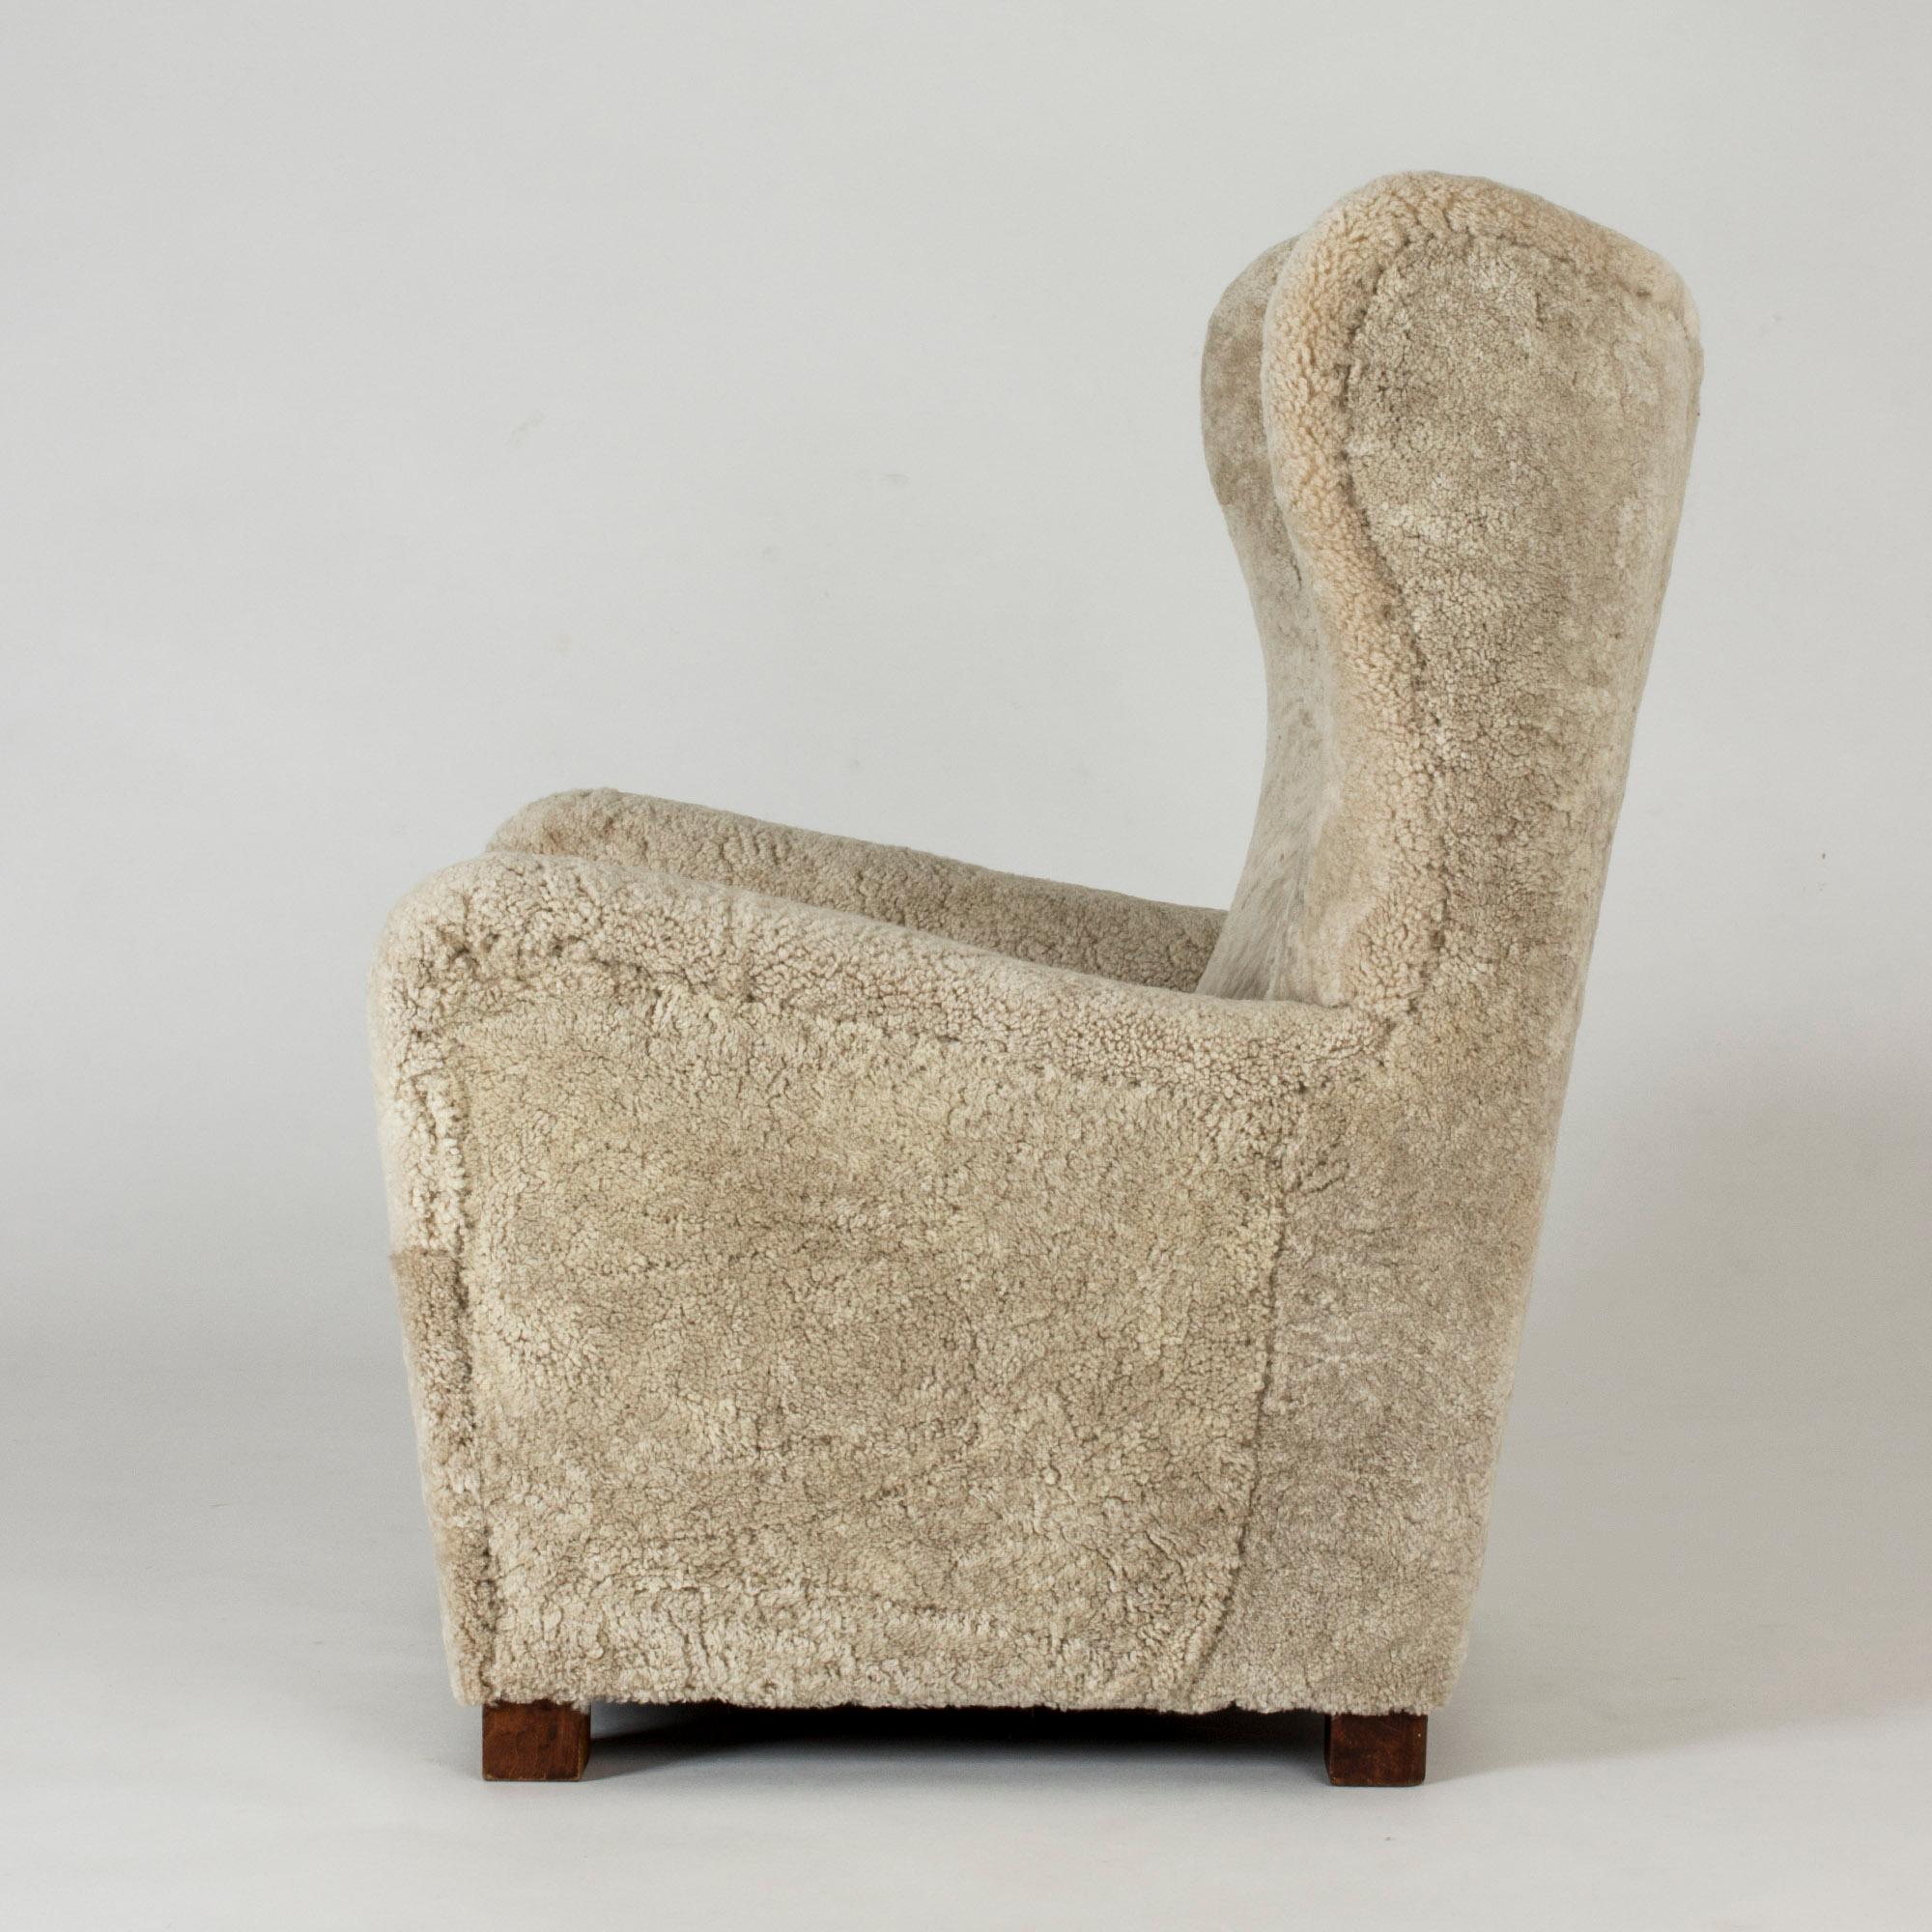 Scandinavian Modern 1930s Lounge Chair from Fritz Hansen